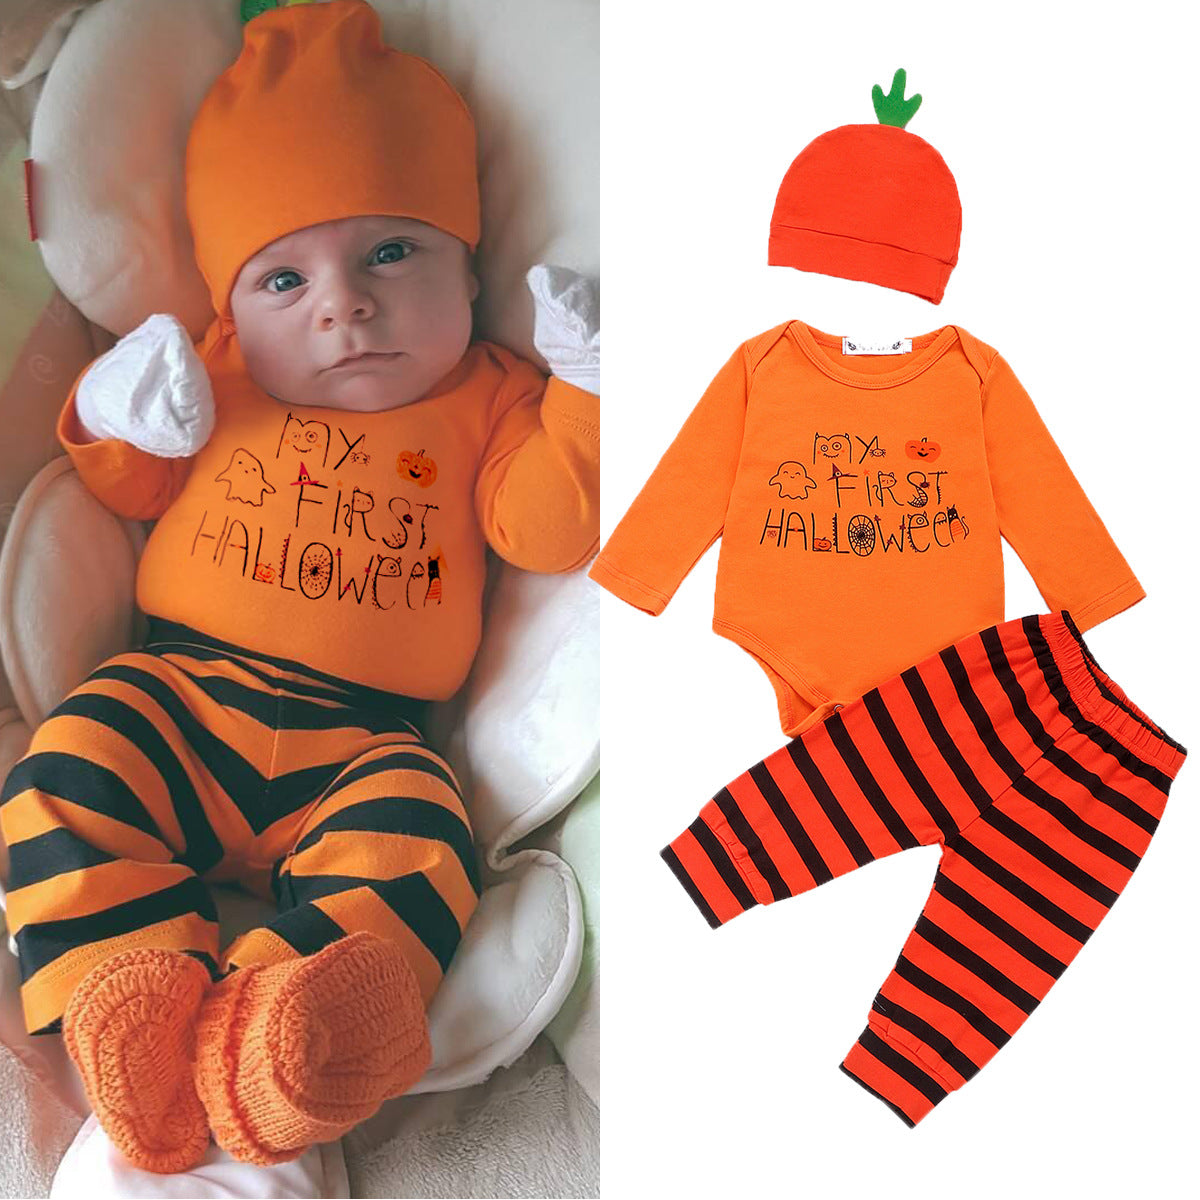 "My First Halloween" Little Pumpkin Set